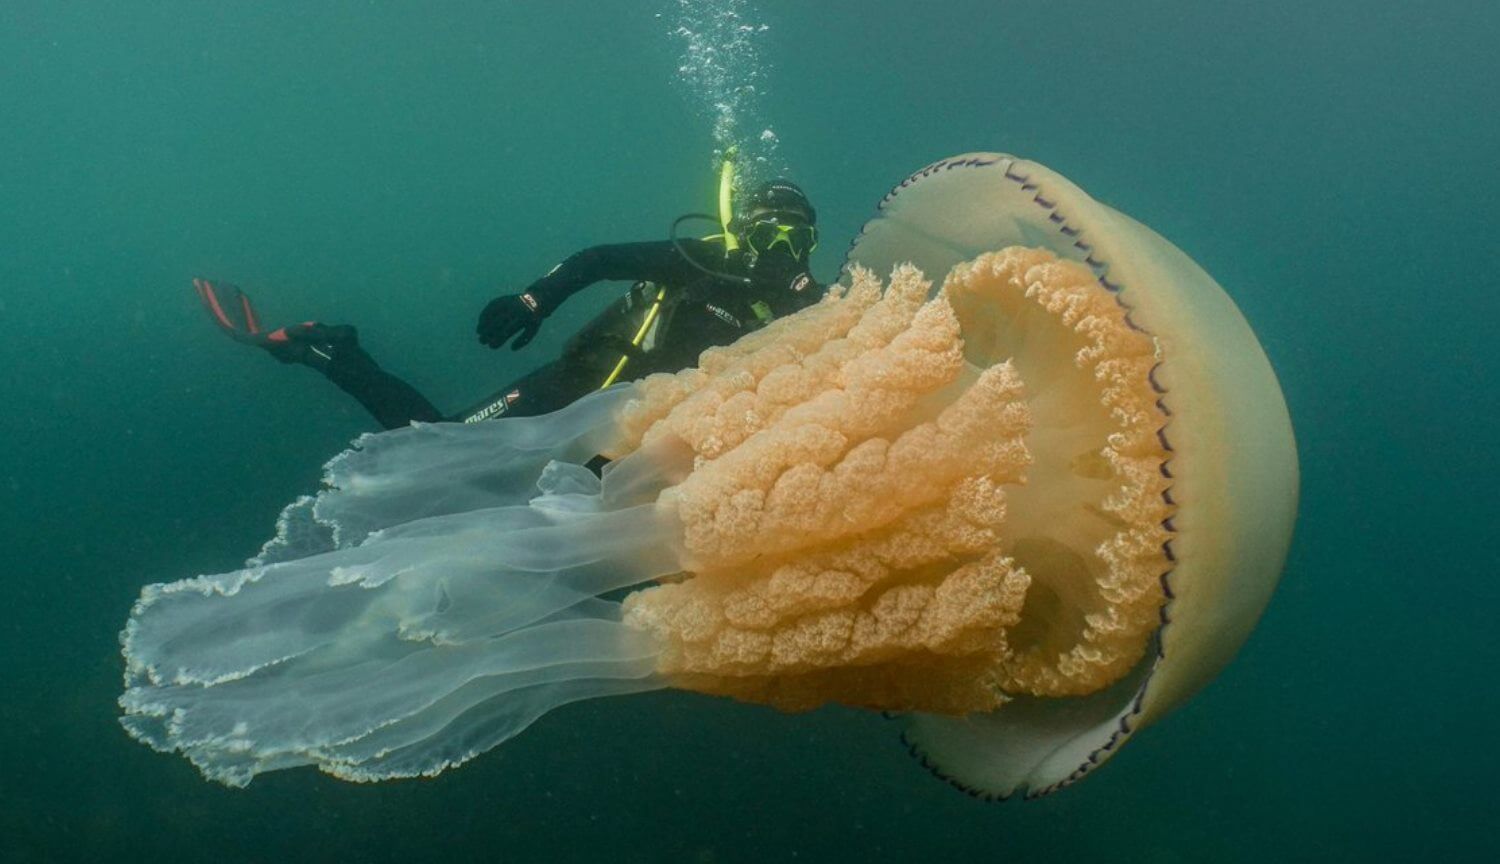 #filmy | W wielkiej Brytanii znaleźli gigantyczną meduzę wielkości człowieka